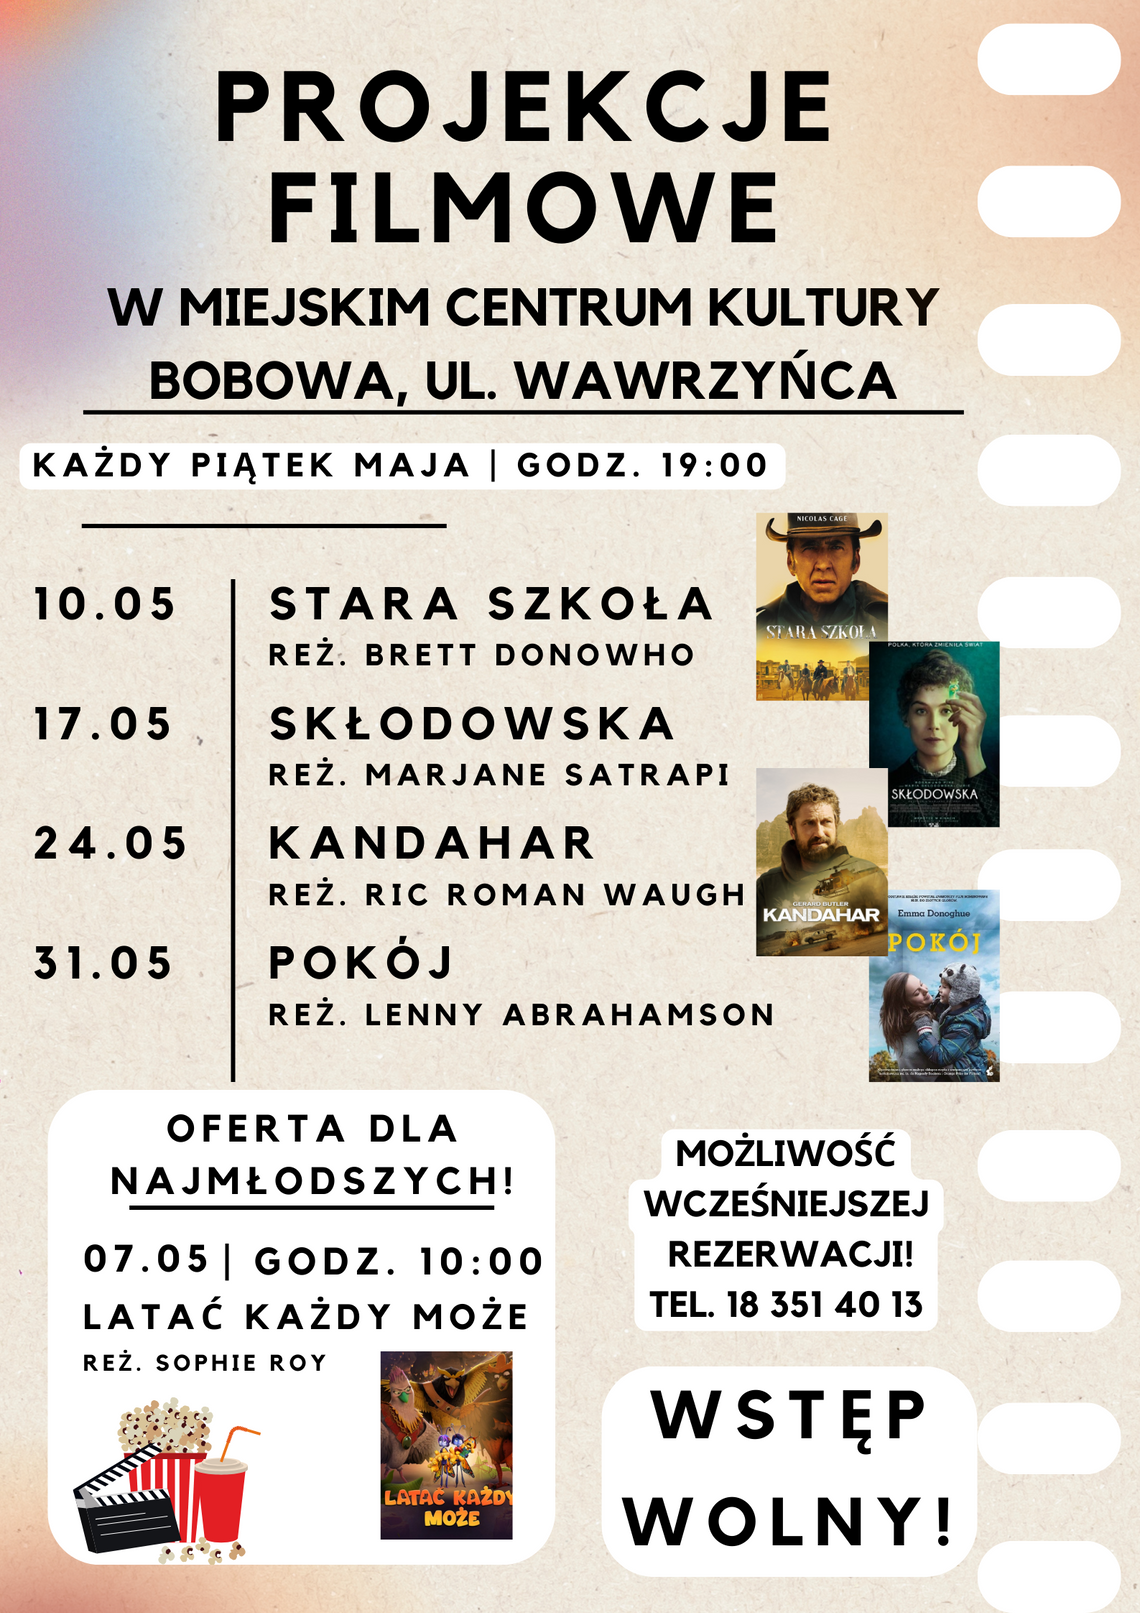 „Skłodowska” – Projekcje filmowe w MCK w Bobowej | halogorlice.info